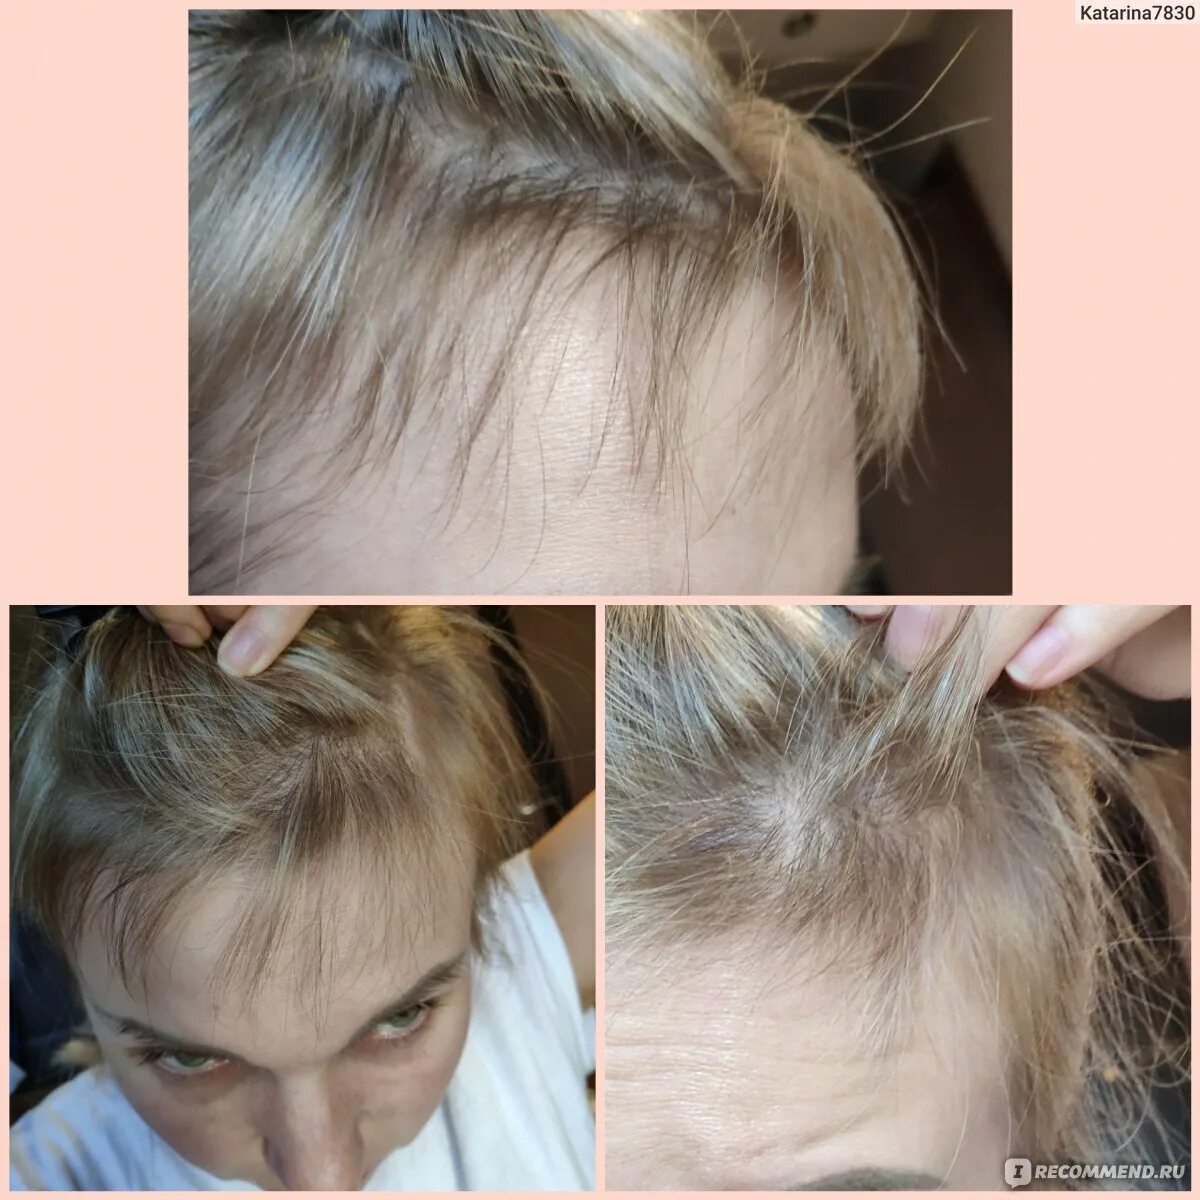 Никотиновая кислота для волос волосы до и после. Никотинка для волос до и после. Никотиновая кислота для волос до и после. Волосы после никотиновой кислоты. Волосы после коронавируса